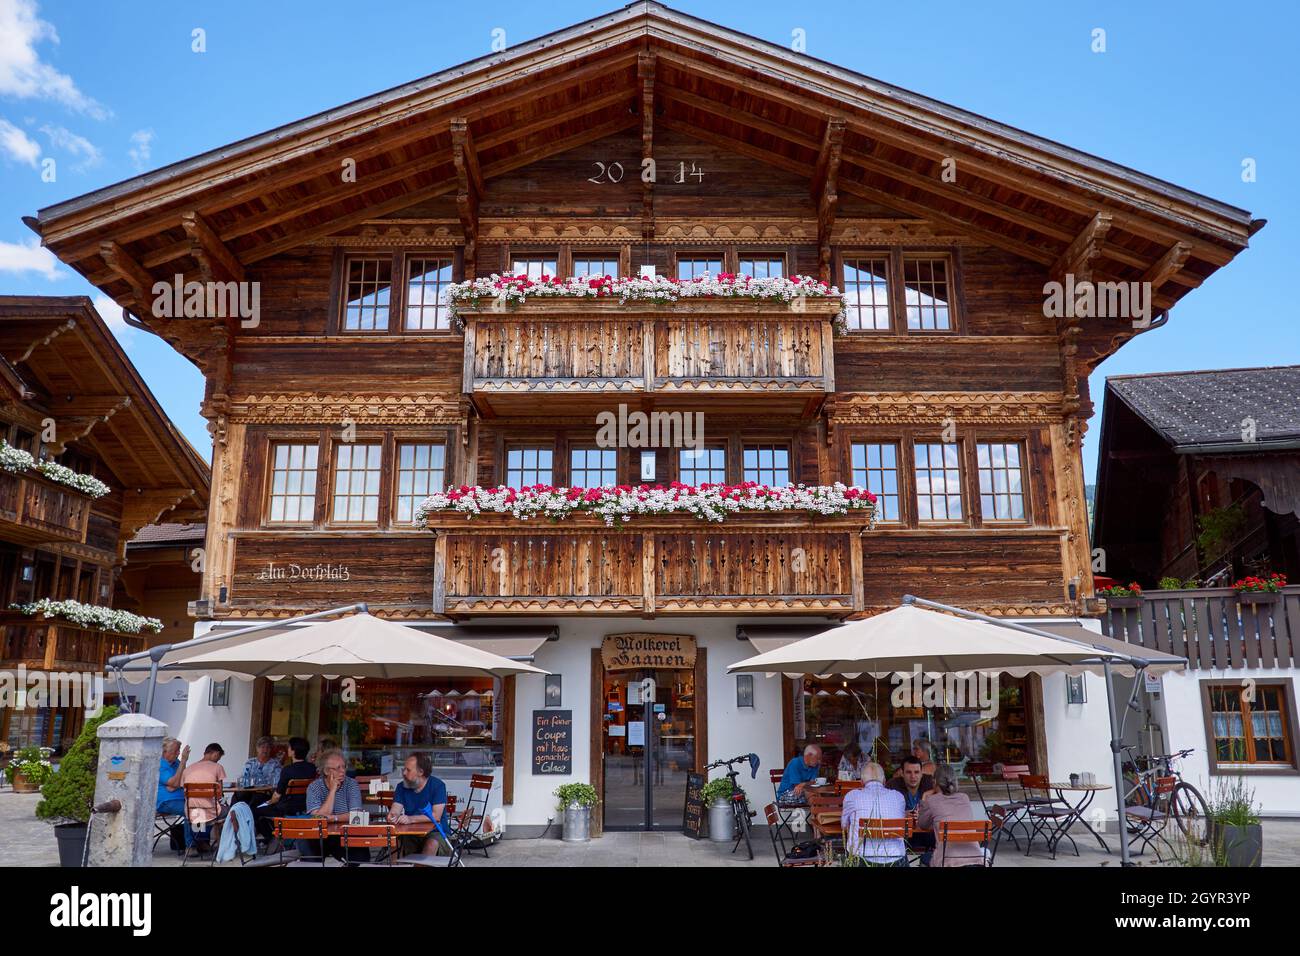 Cafe ristorante e negozio in uno chalet nel centro del villaggio di Saanen - Oberland Bernese, Svizzera Foto Stock